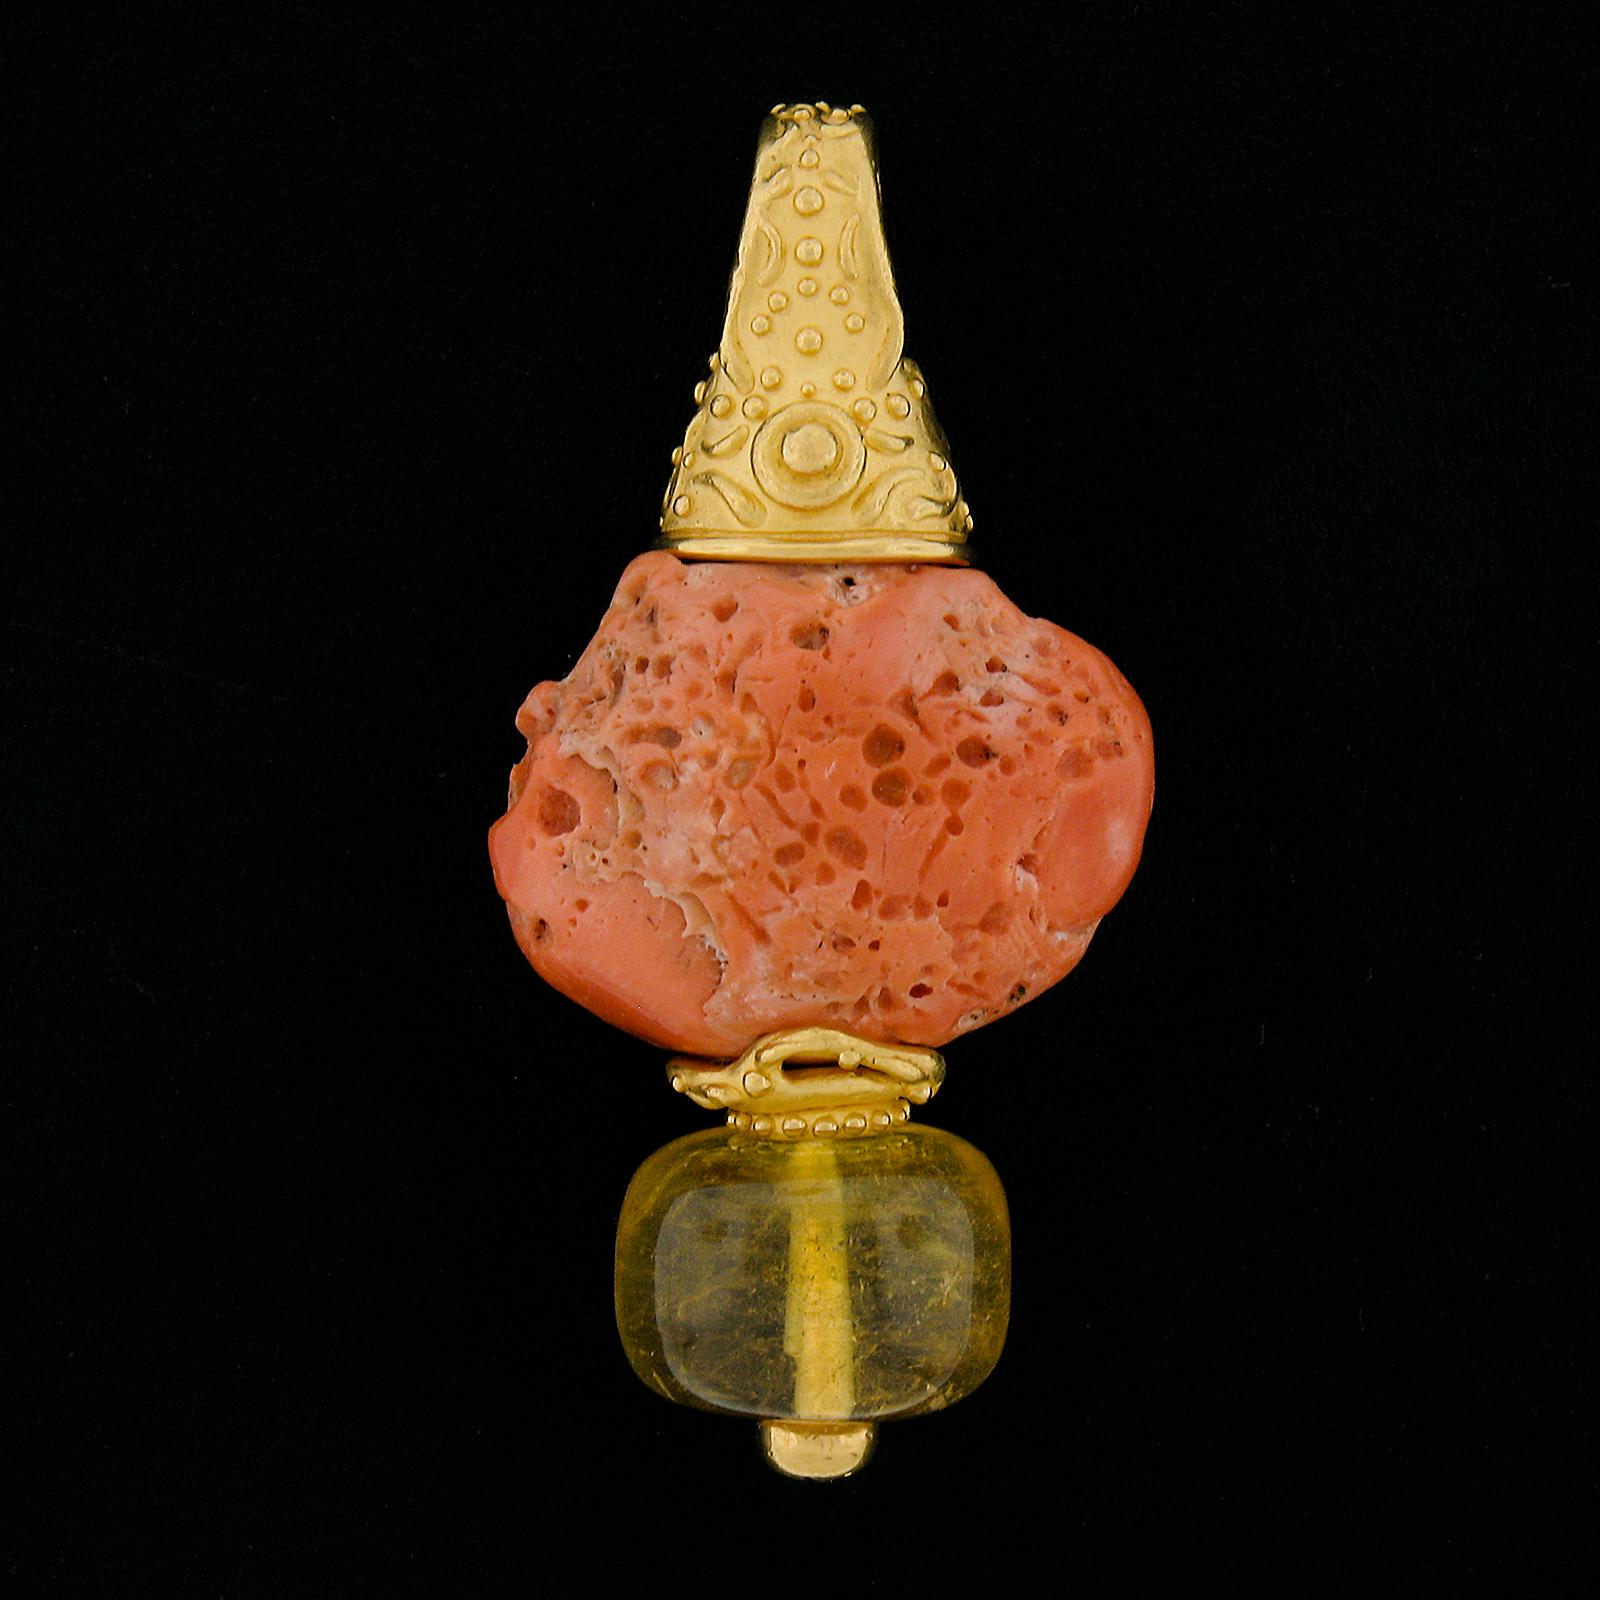 --Pierre(s) :...
(1) Corail véritable naturel - couleur rose saumon - 19.2x28.1mm (approx.)
(1) Citrine véritable naturelle - forme ronde - couleur jaune - 16,7 mm chaque (approx.)

MATERIAL : Or jaune 22k massif 
Poids total : 34,86 grammes
Hauteur